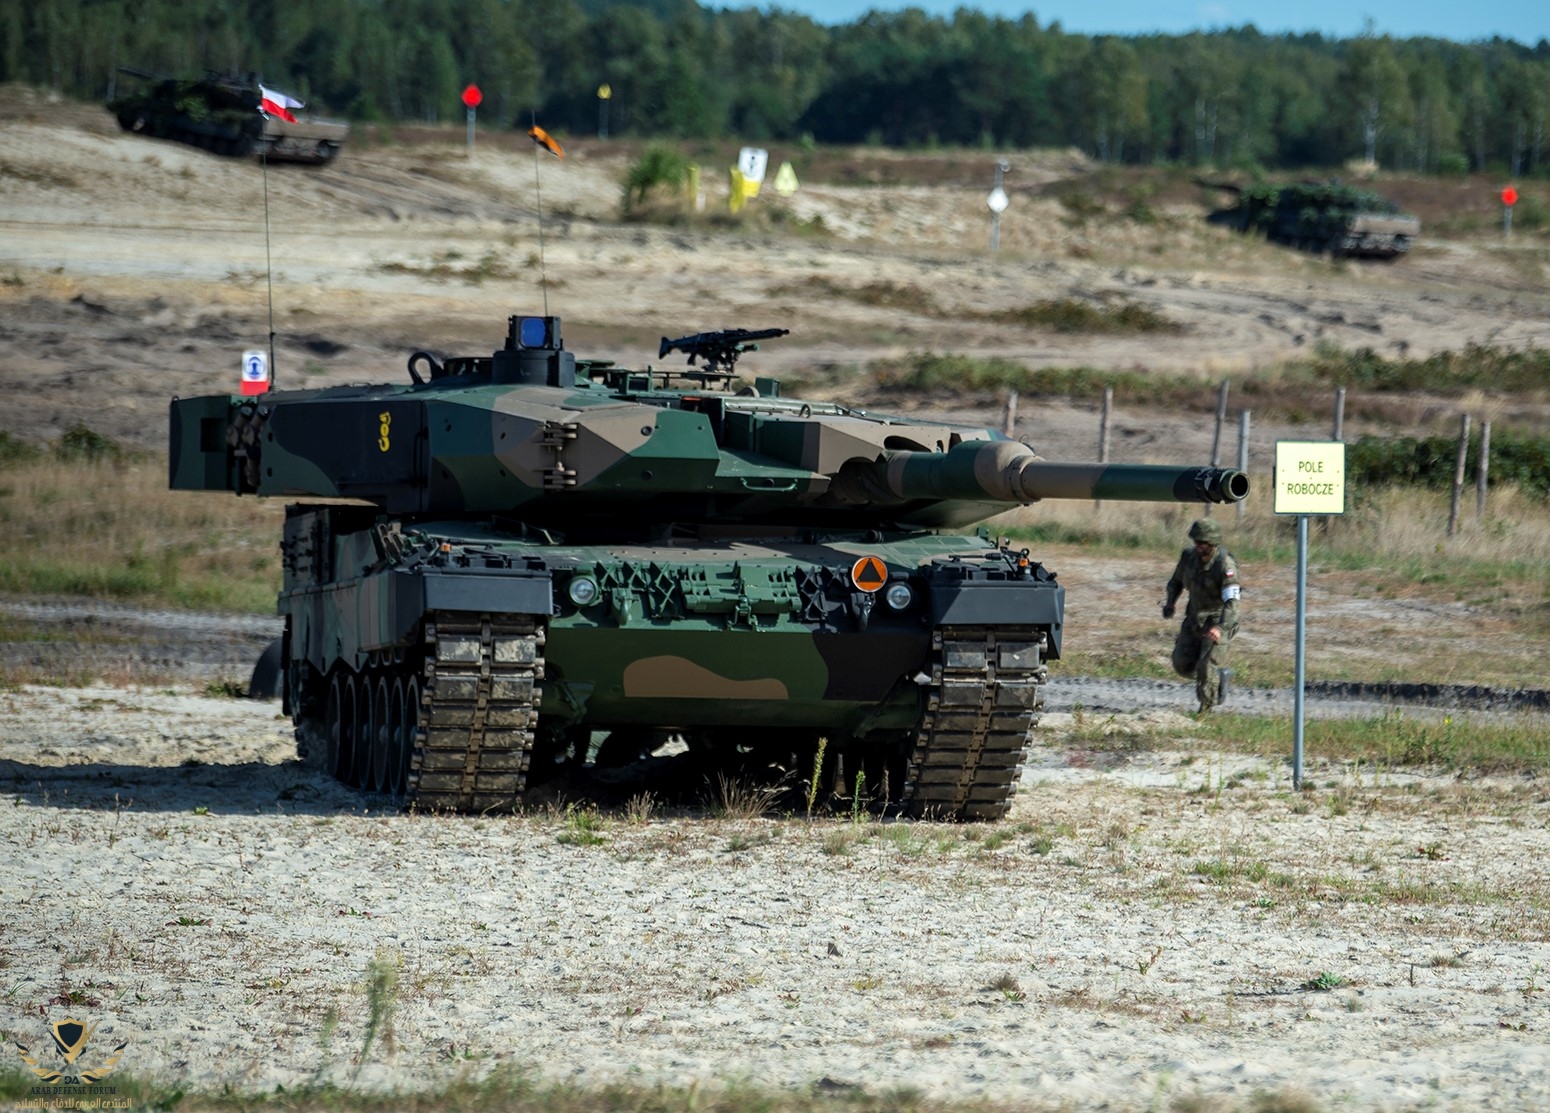 Leopard_2PL_-_Szkolenie_Wojska_Polskiego_w_Nowej_Dębie_(cropped).jpg